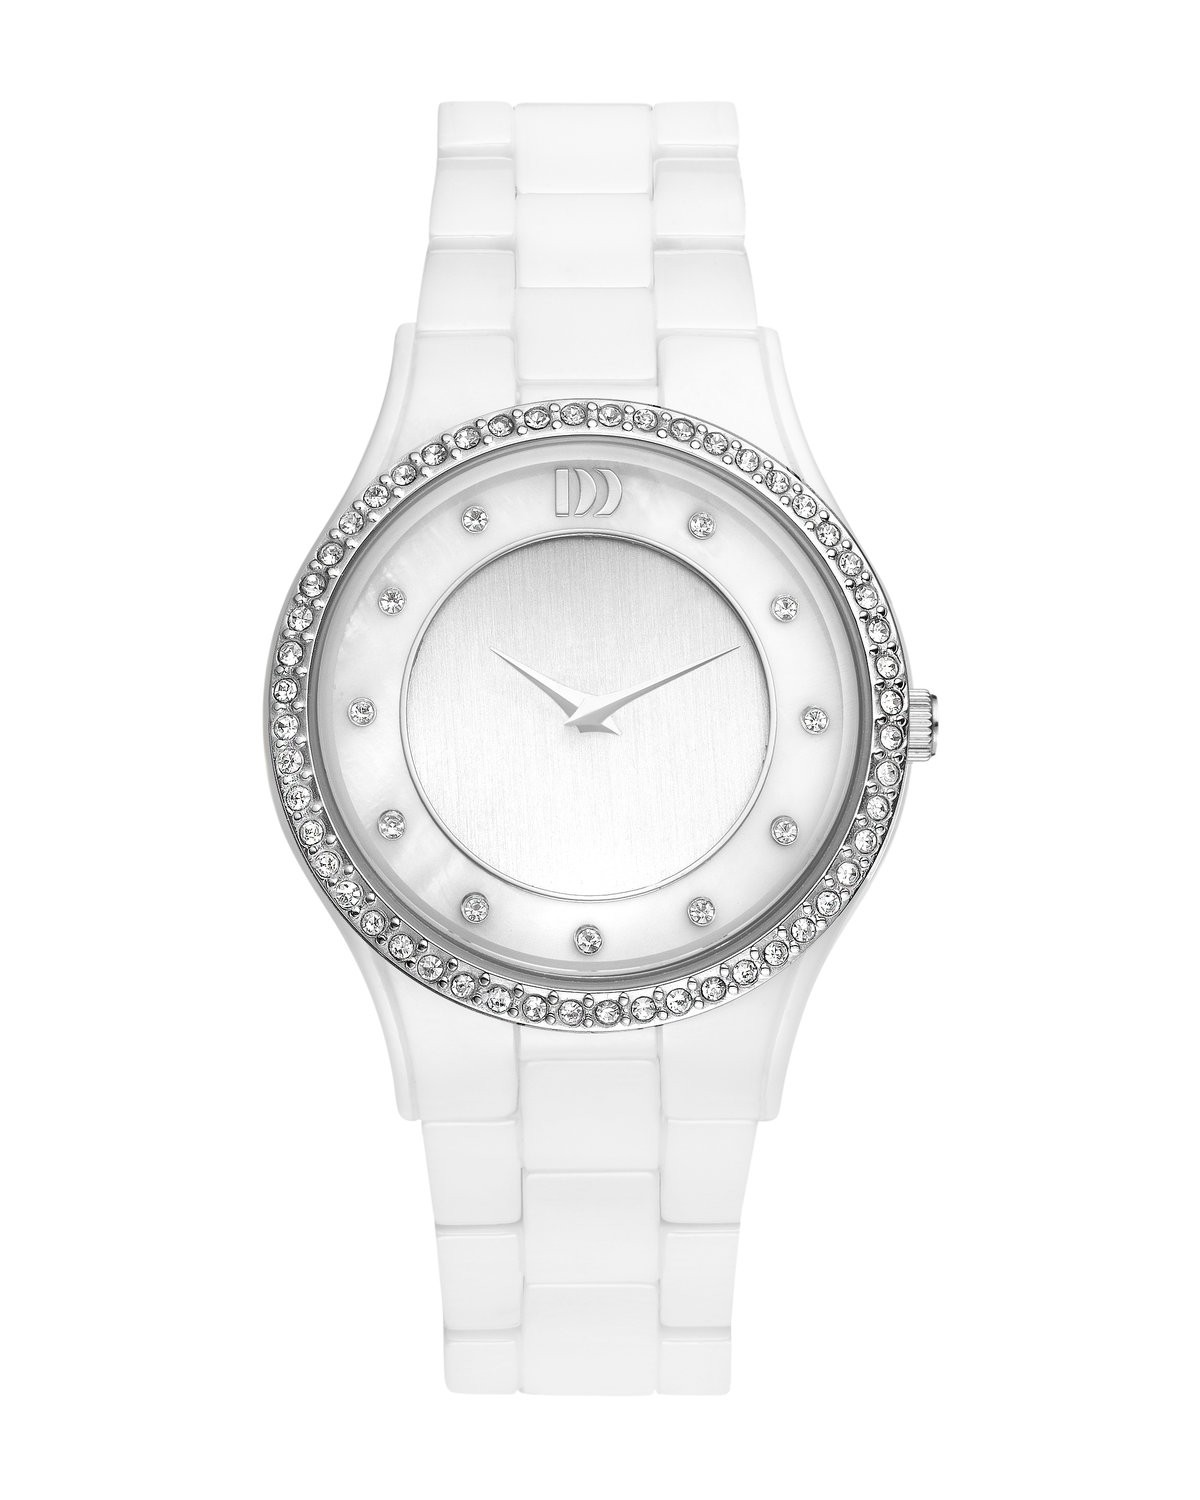 Q 1024. Наручные часы Danish Design iv62q1024. Claude Bernard часы женские 20061. Iv62q899 SM WH. Белые часы женские с белым циферблатом.